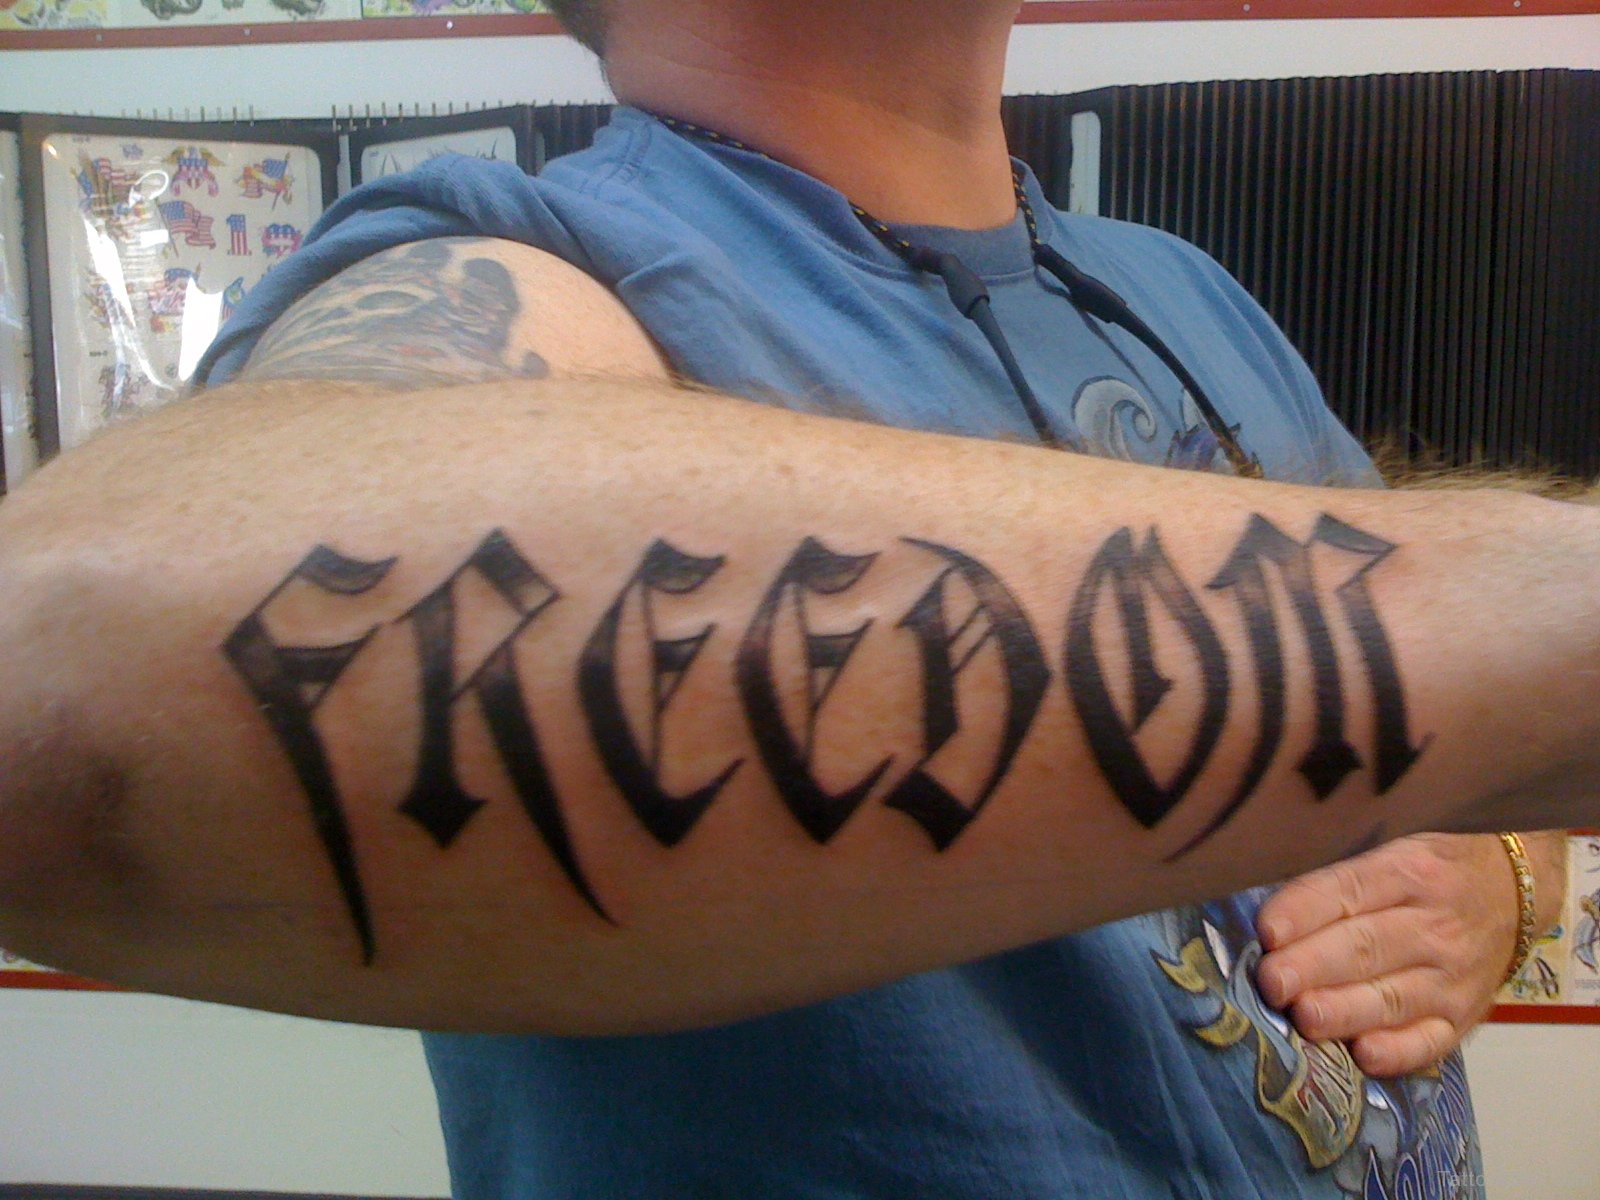 Freedom tattoo | Freedom tattoos, Small tattoos, Tattoos